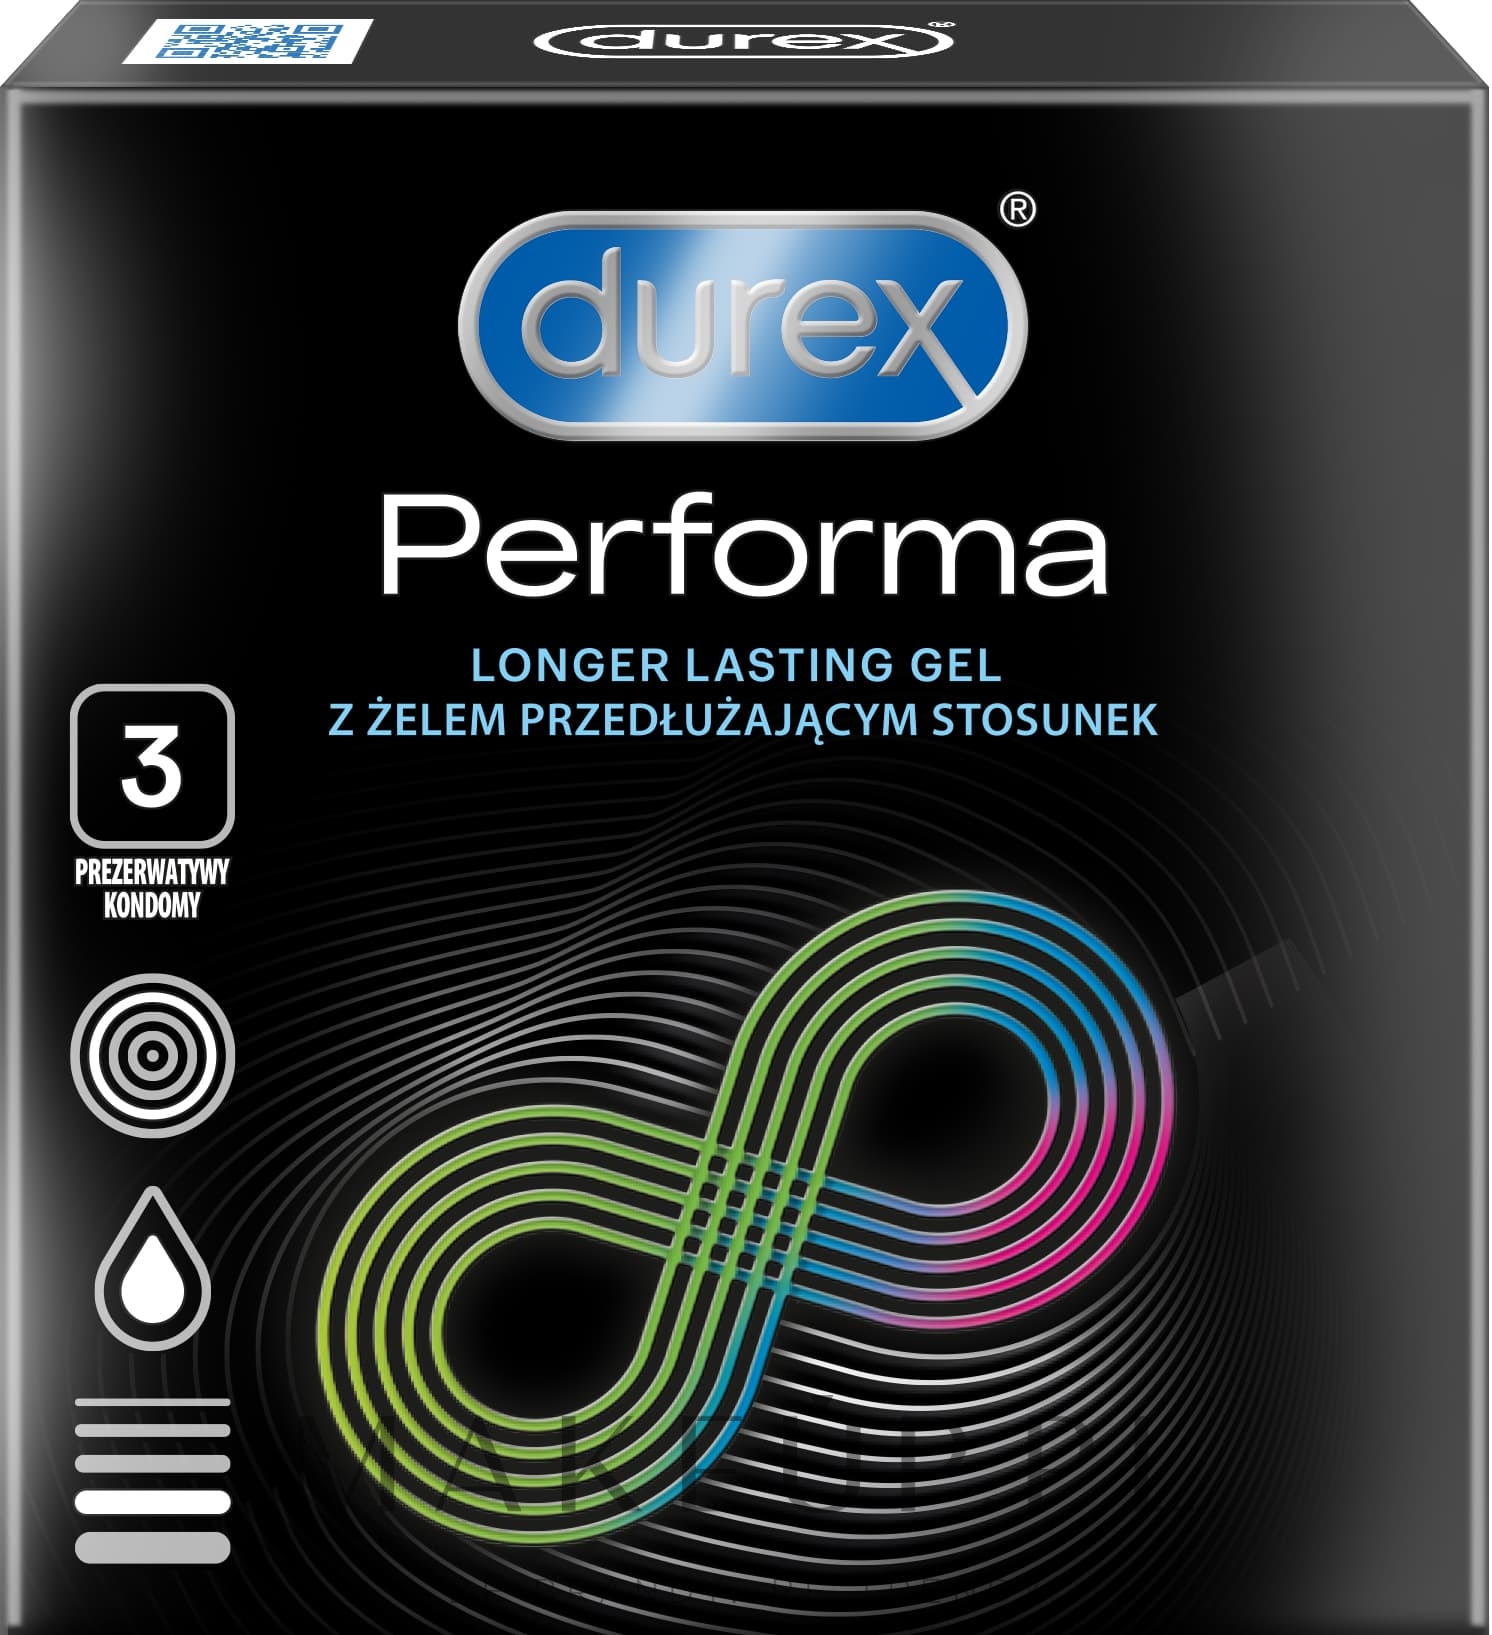 Prezerwatywy, 3 szt. - Durex Performa Condoms — Zdjęcie 3 szt.